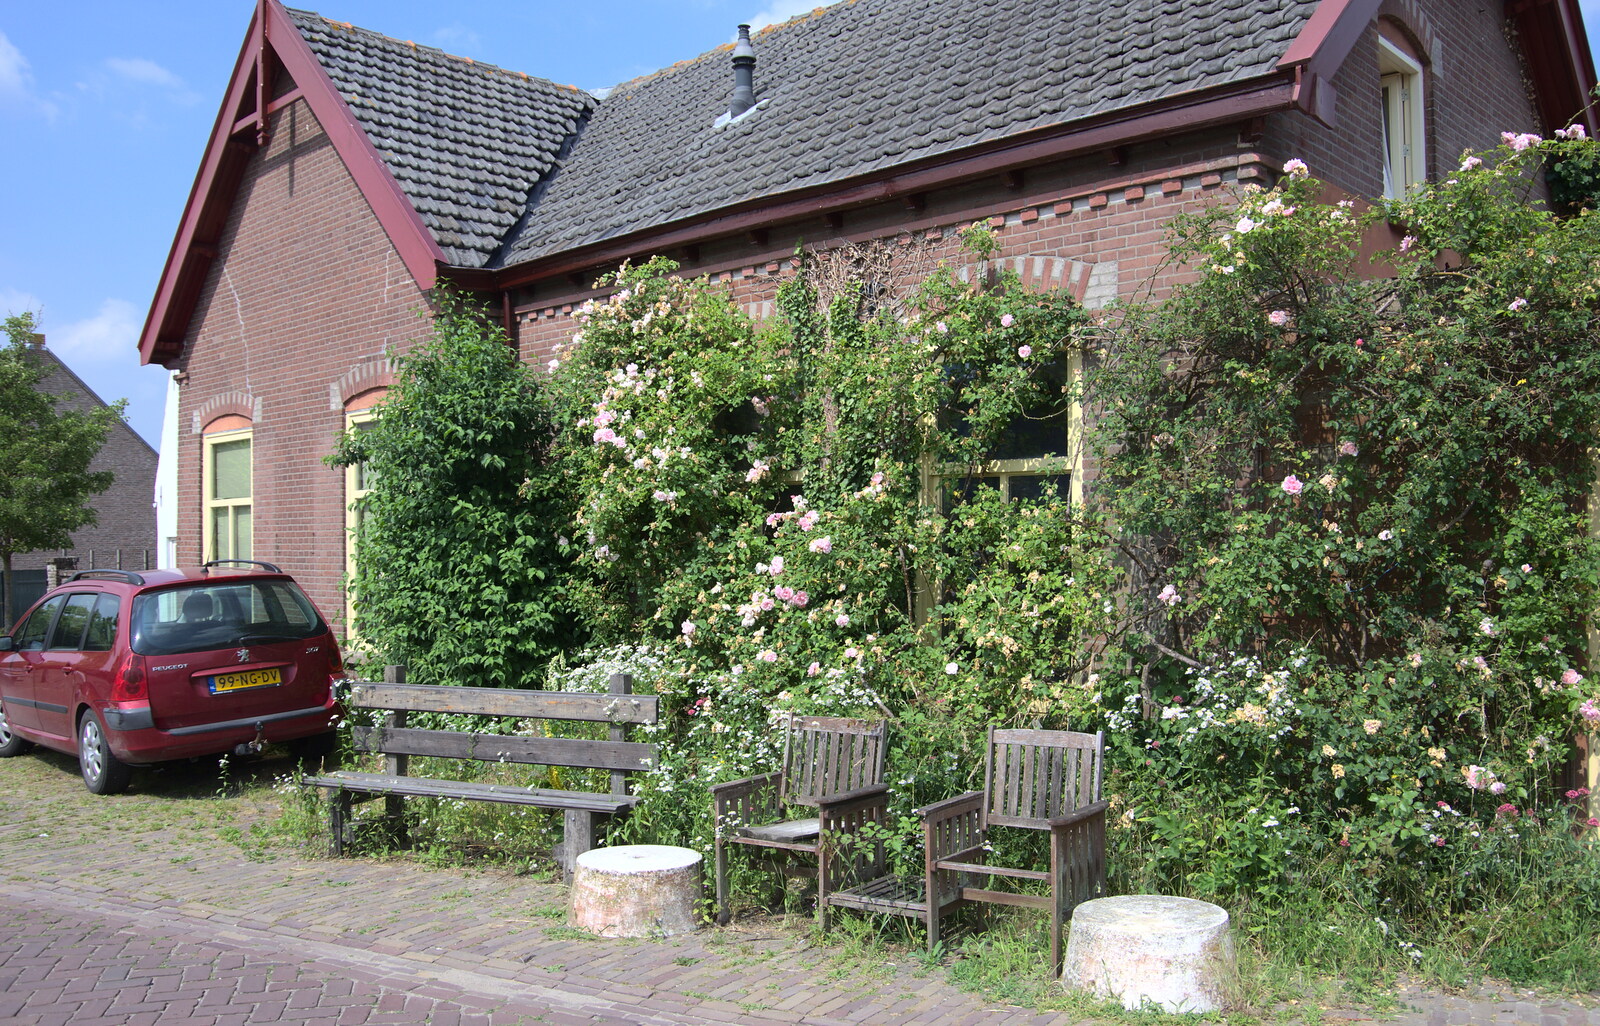 A house by Nieuwe Zuiderlingedijk is a bit overgrown from A Postcard From Asperen, Gelderland, Netherlands - 9th June 2018